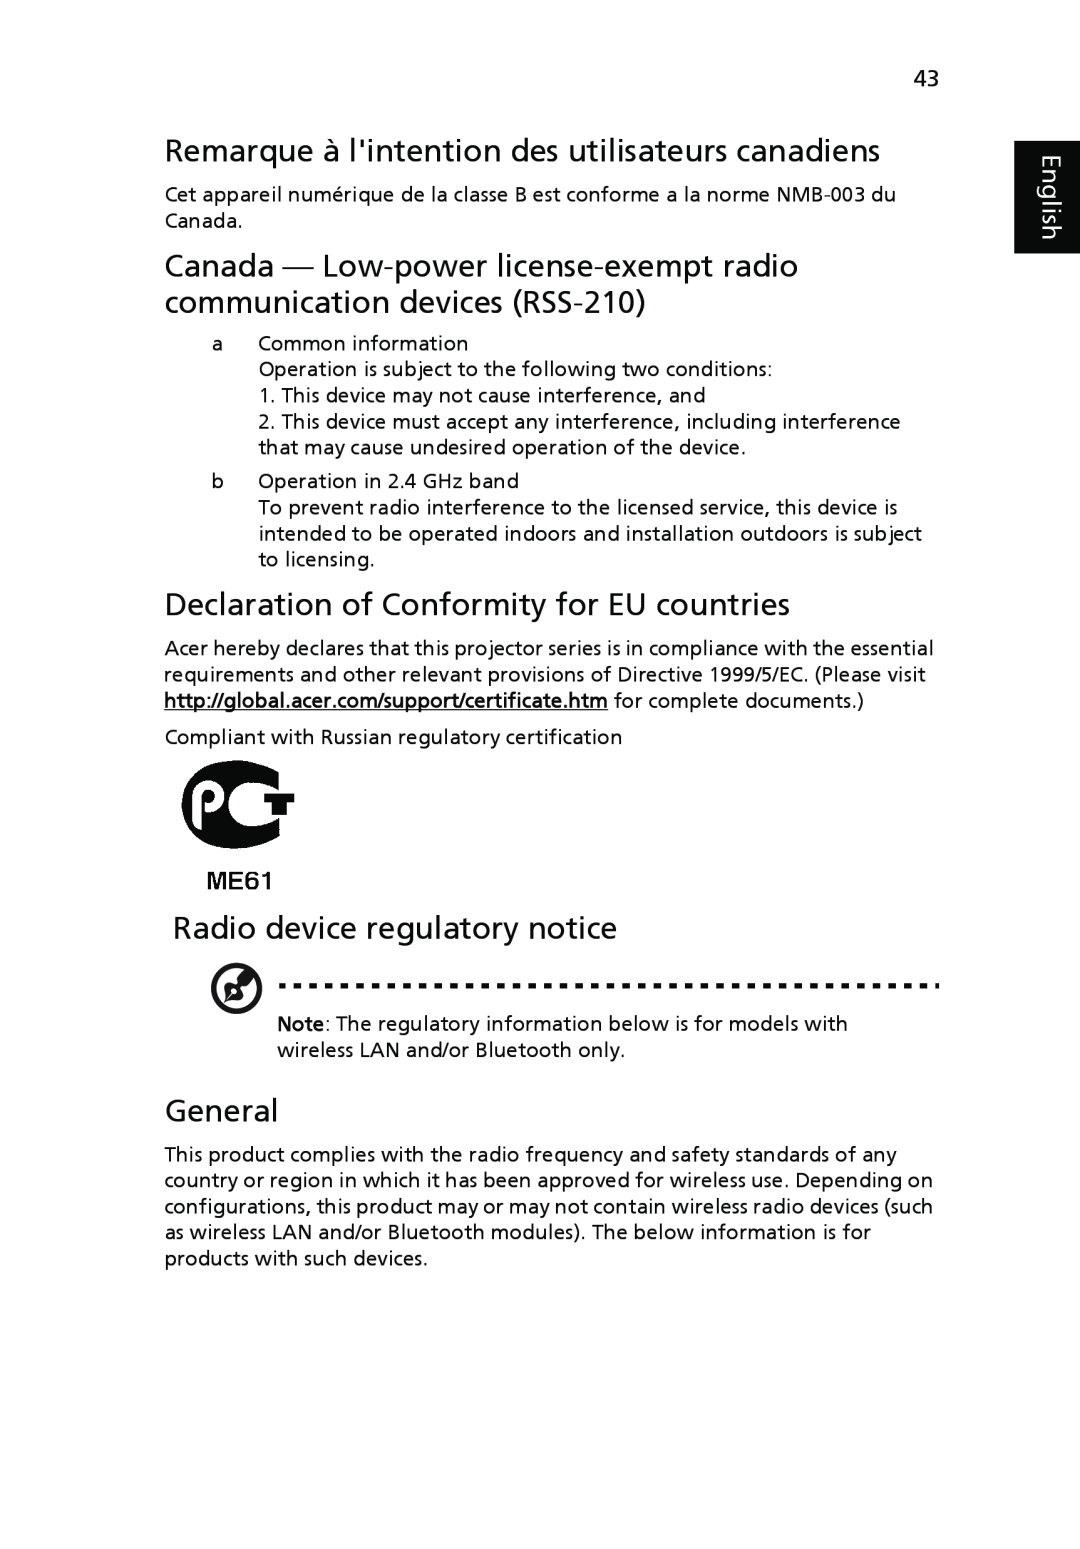 Acer P1266 Remarque à lintention des utilisateurs canadiens, Declaration of Conformity for EU countries, General, English 